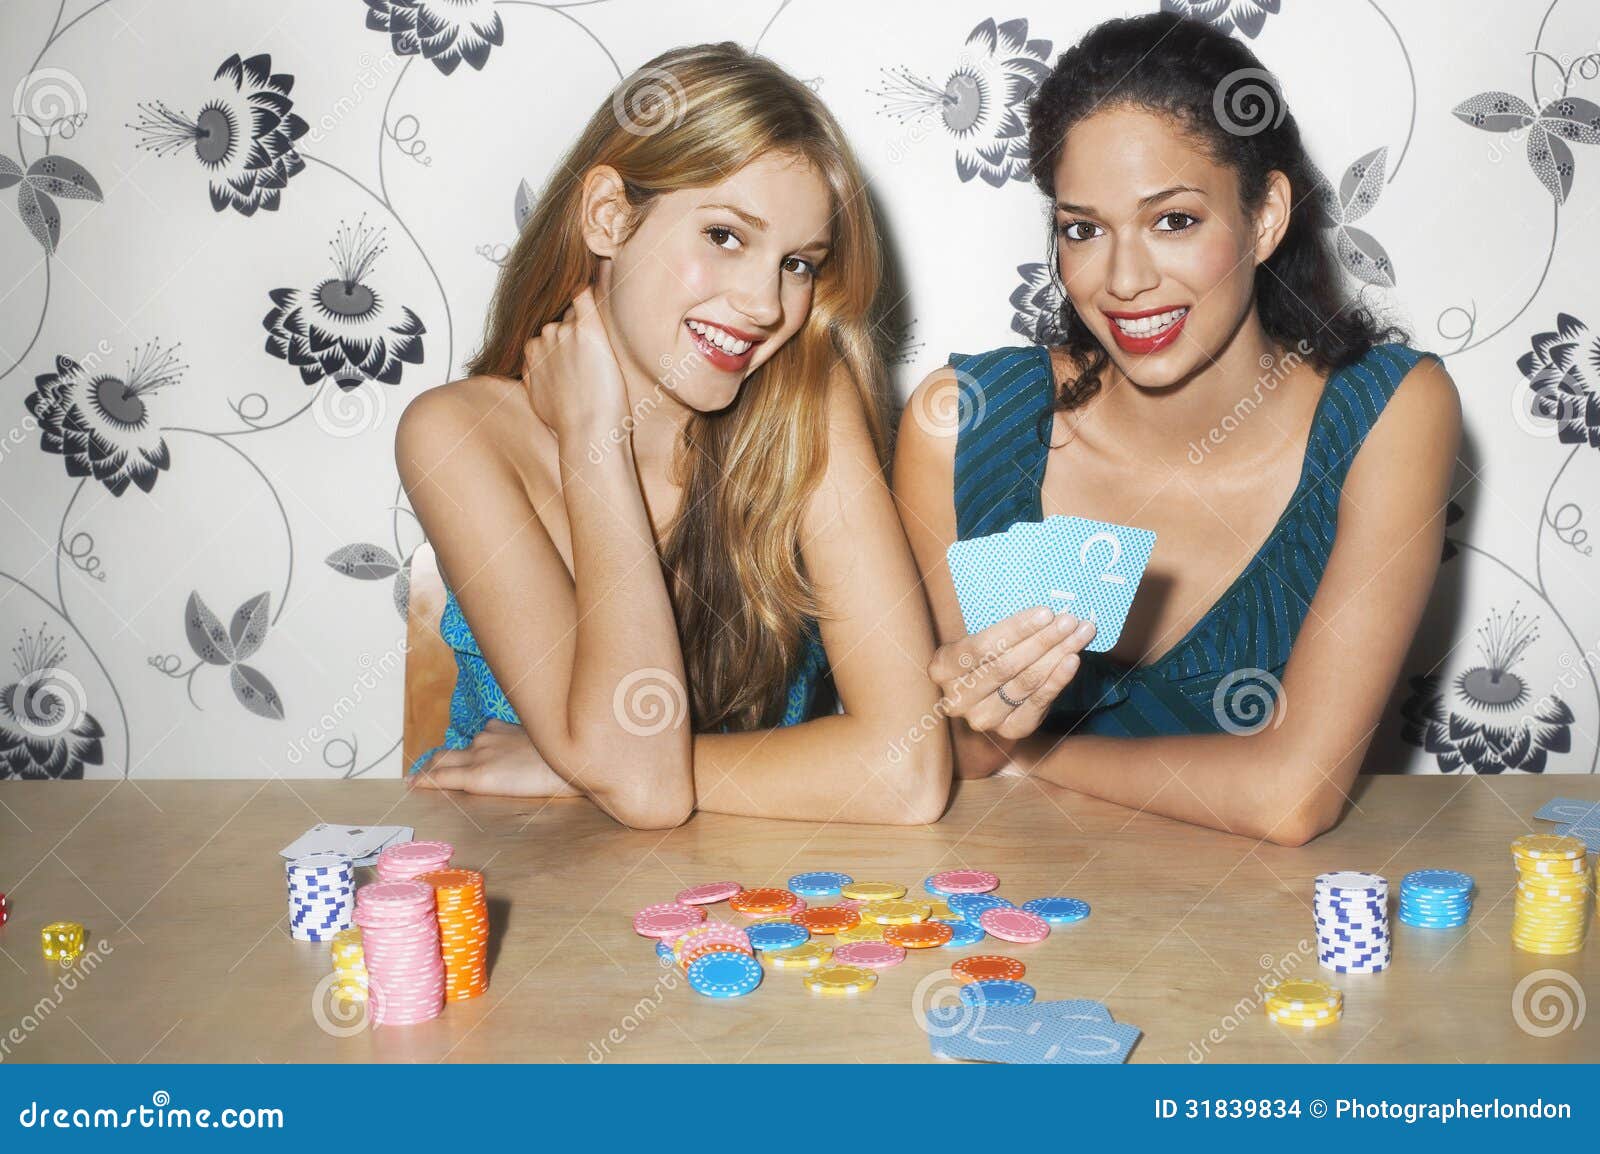 Игра на раздевание сестра брат. Игра в карты на раздевание. Карты на раздевание картинки. Женщина с картами. Игра с подругой на раздевание.